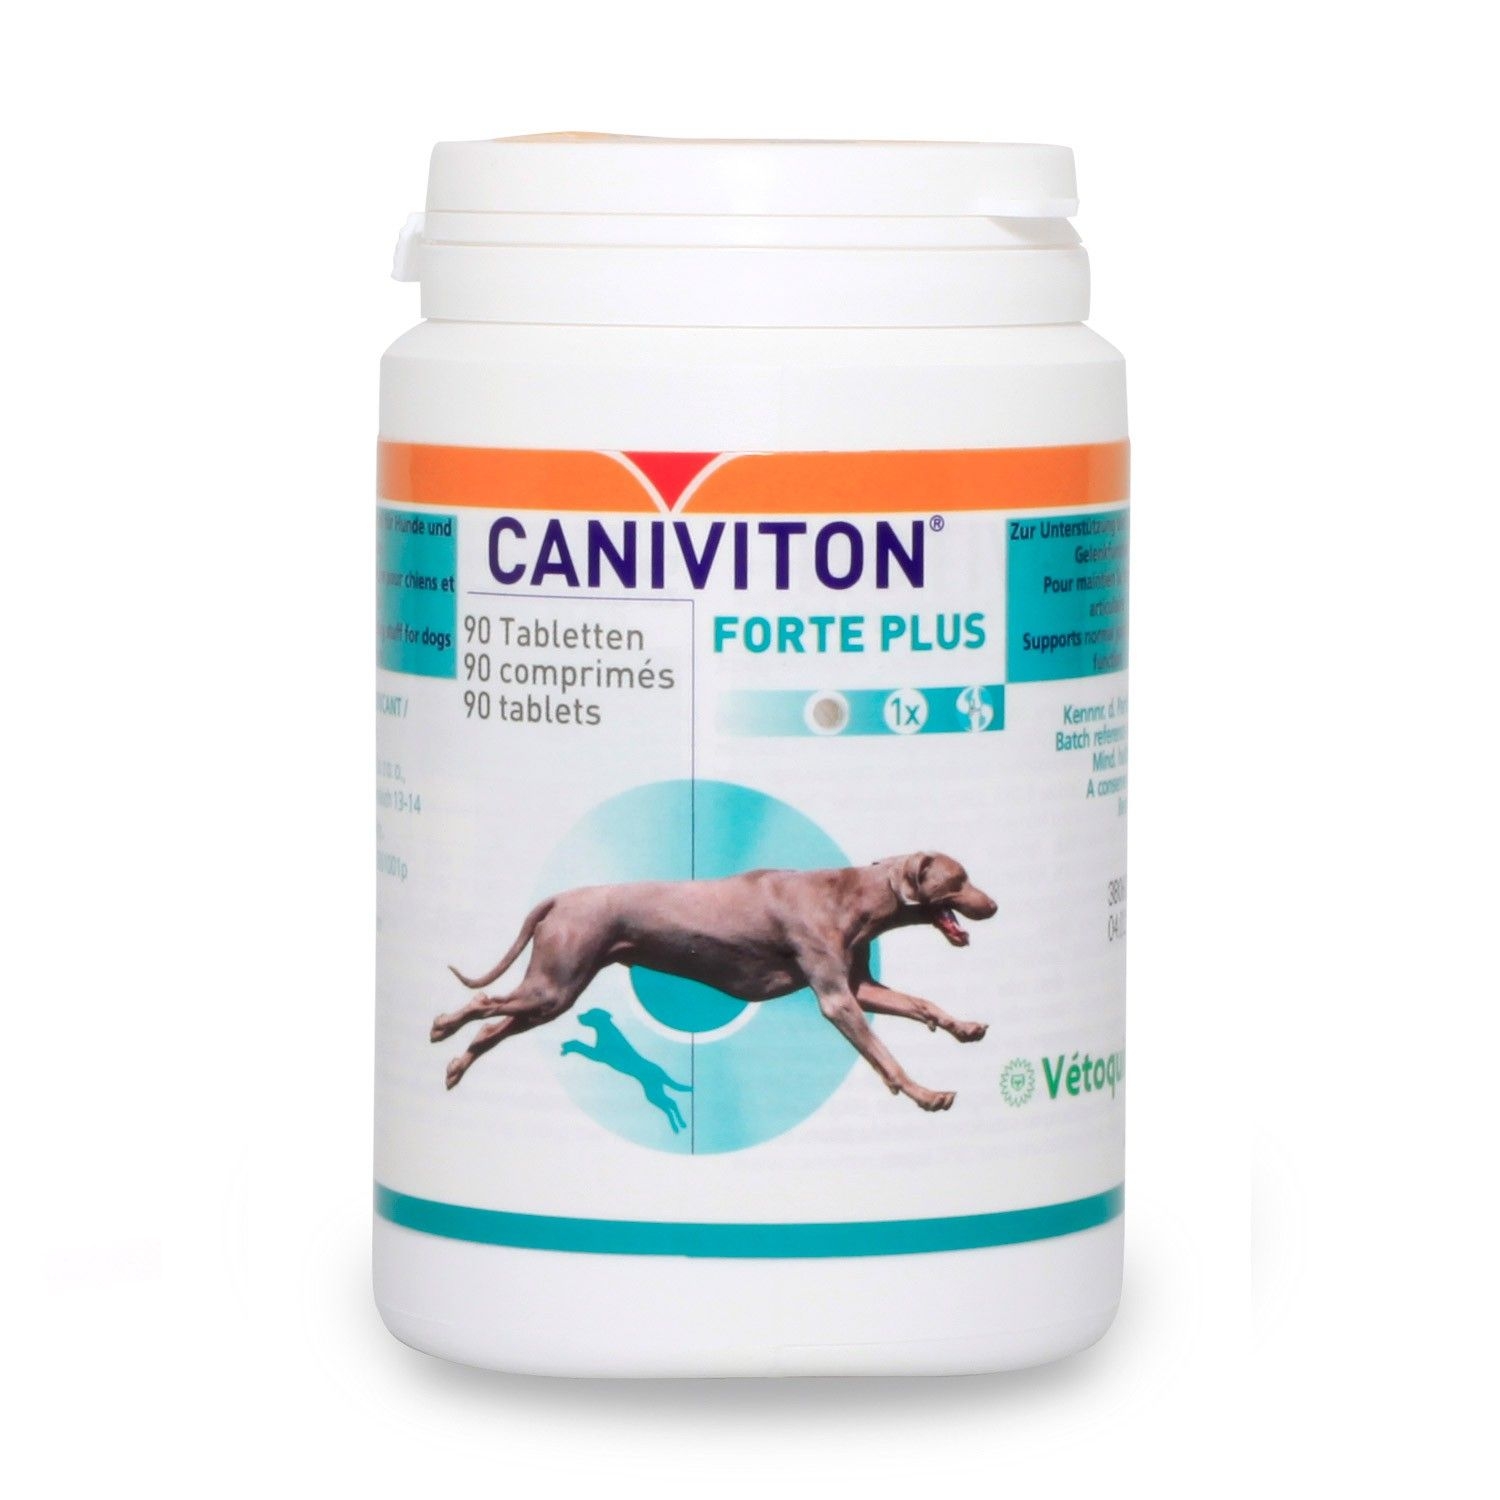 Caniviton Forte Plus Kautabletten für die Gelenke beim Hund von Vetoquinol